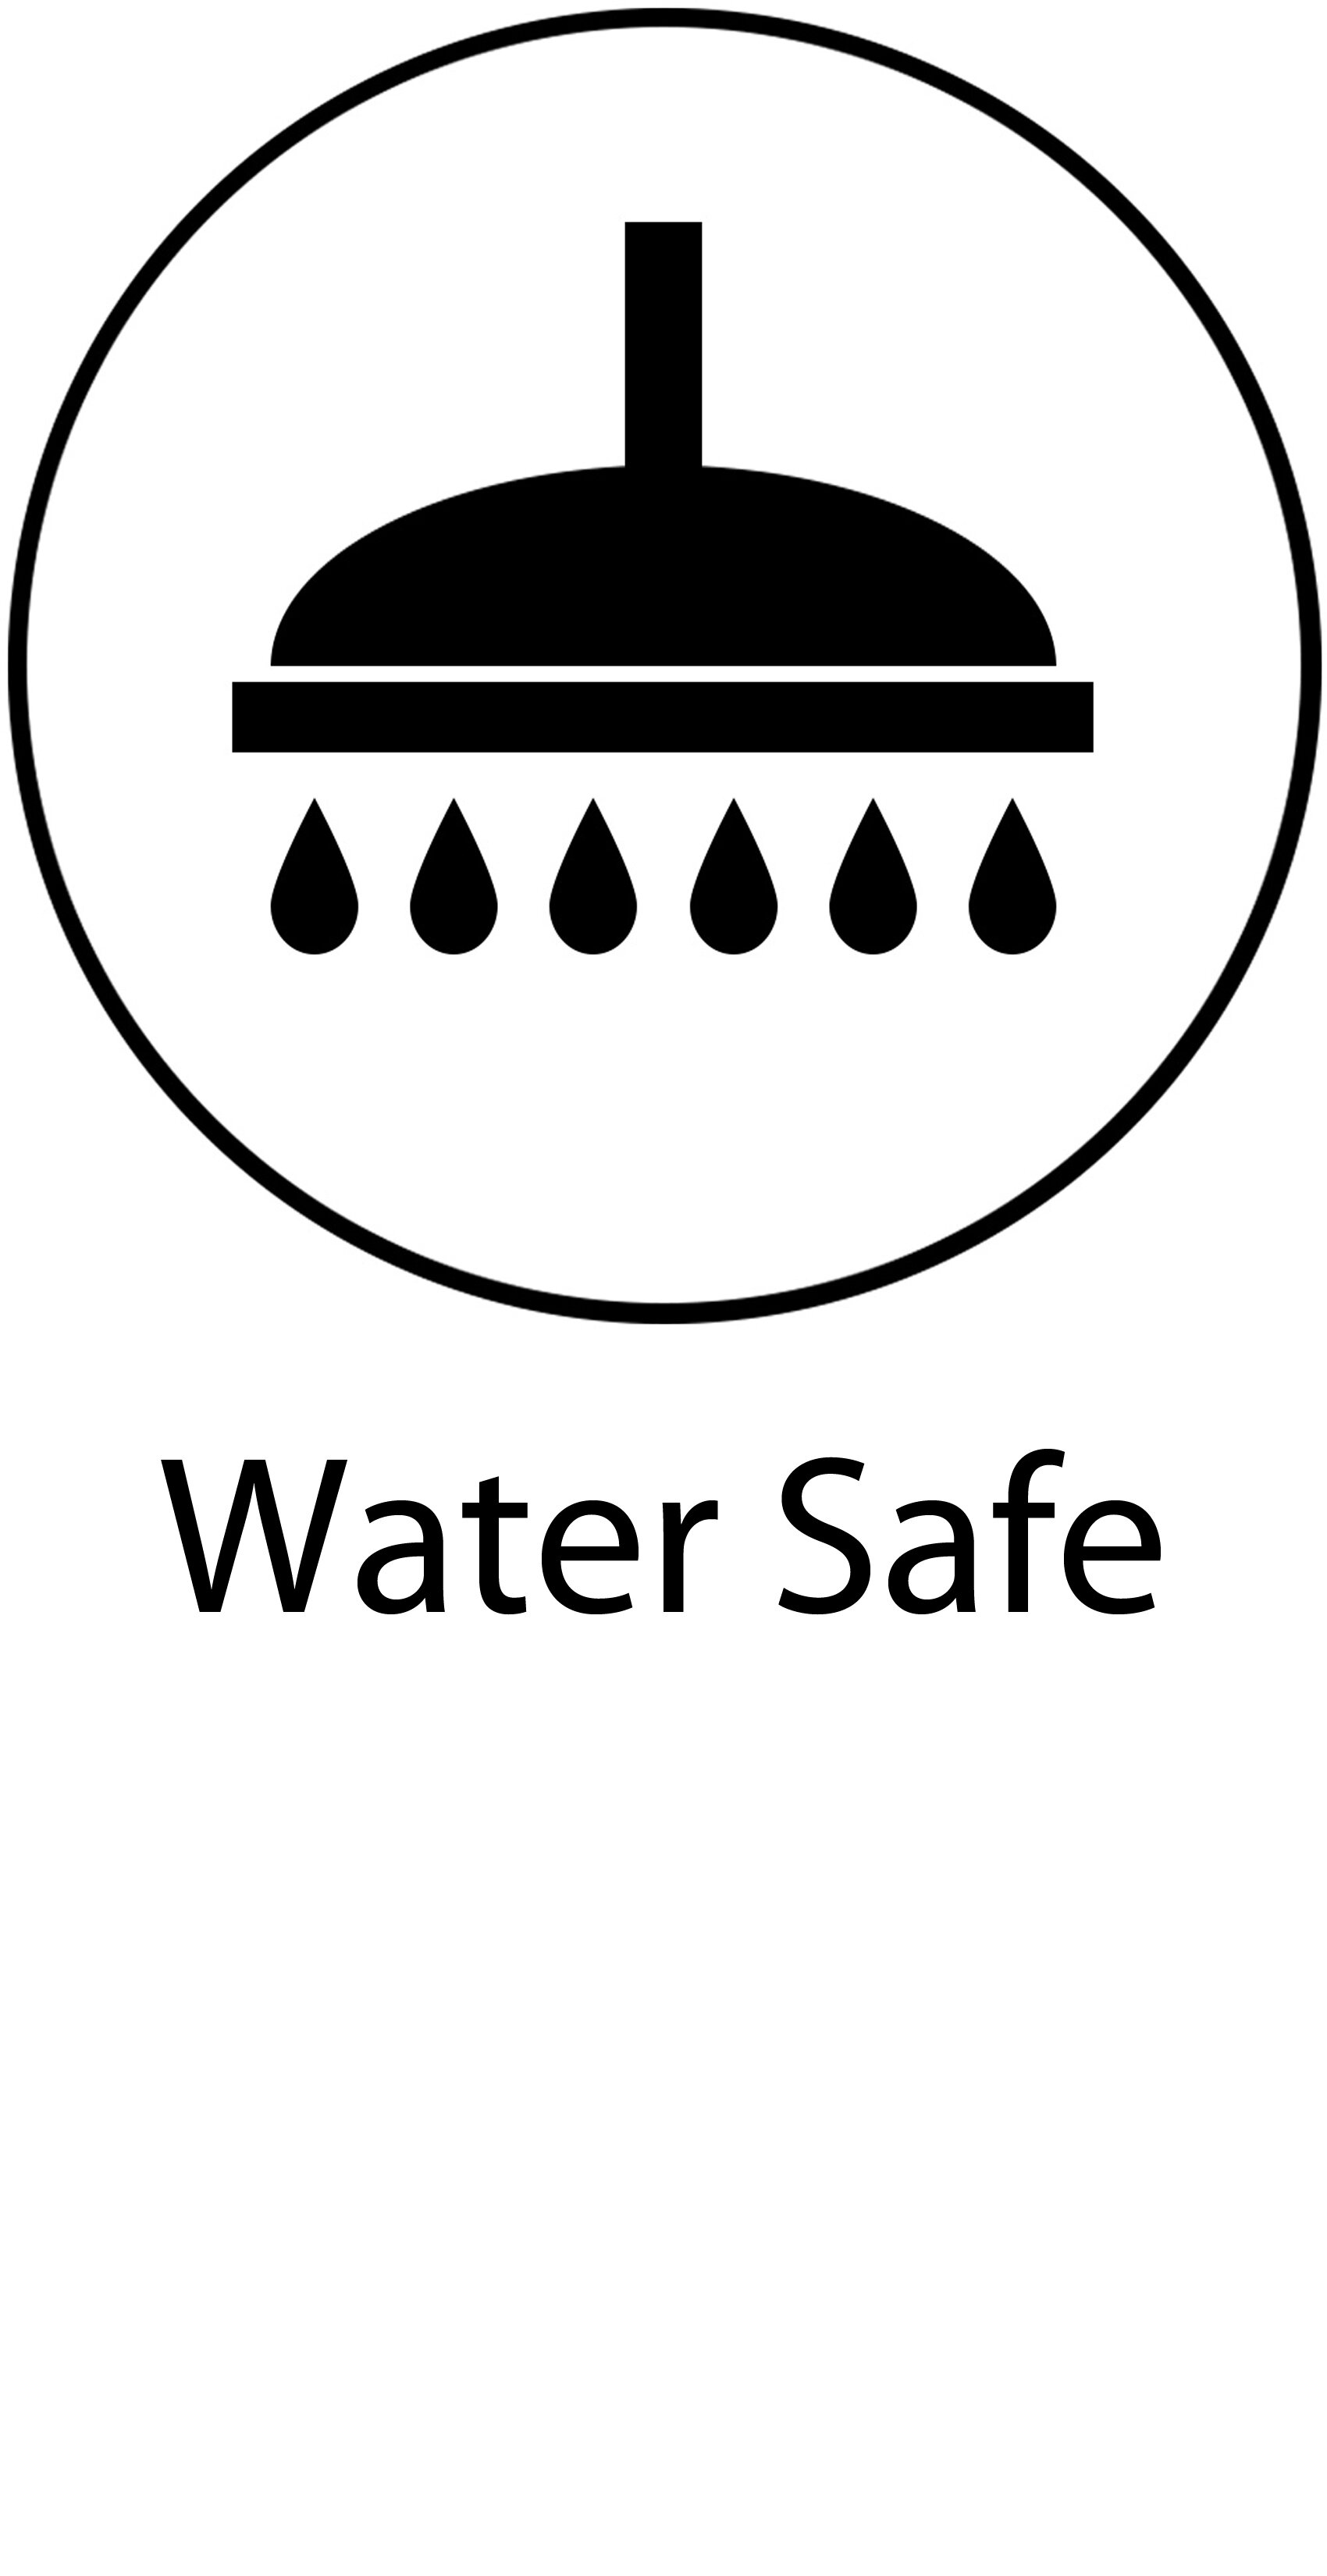 05 Water Safe.jpg